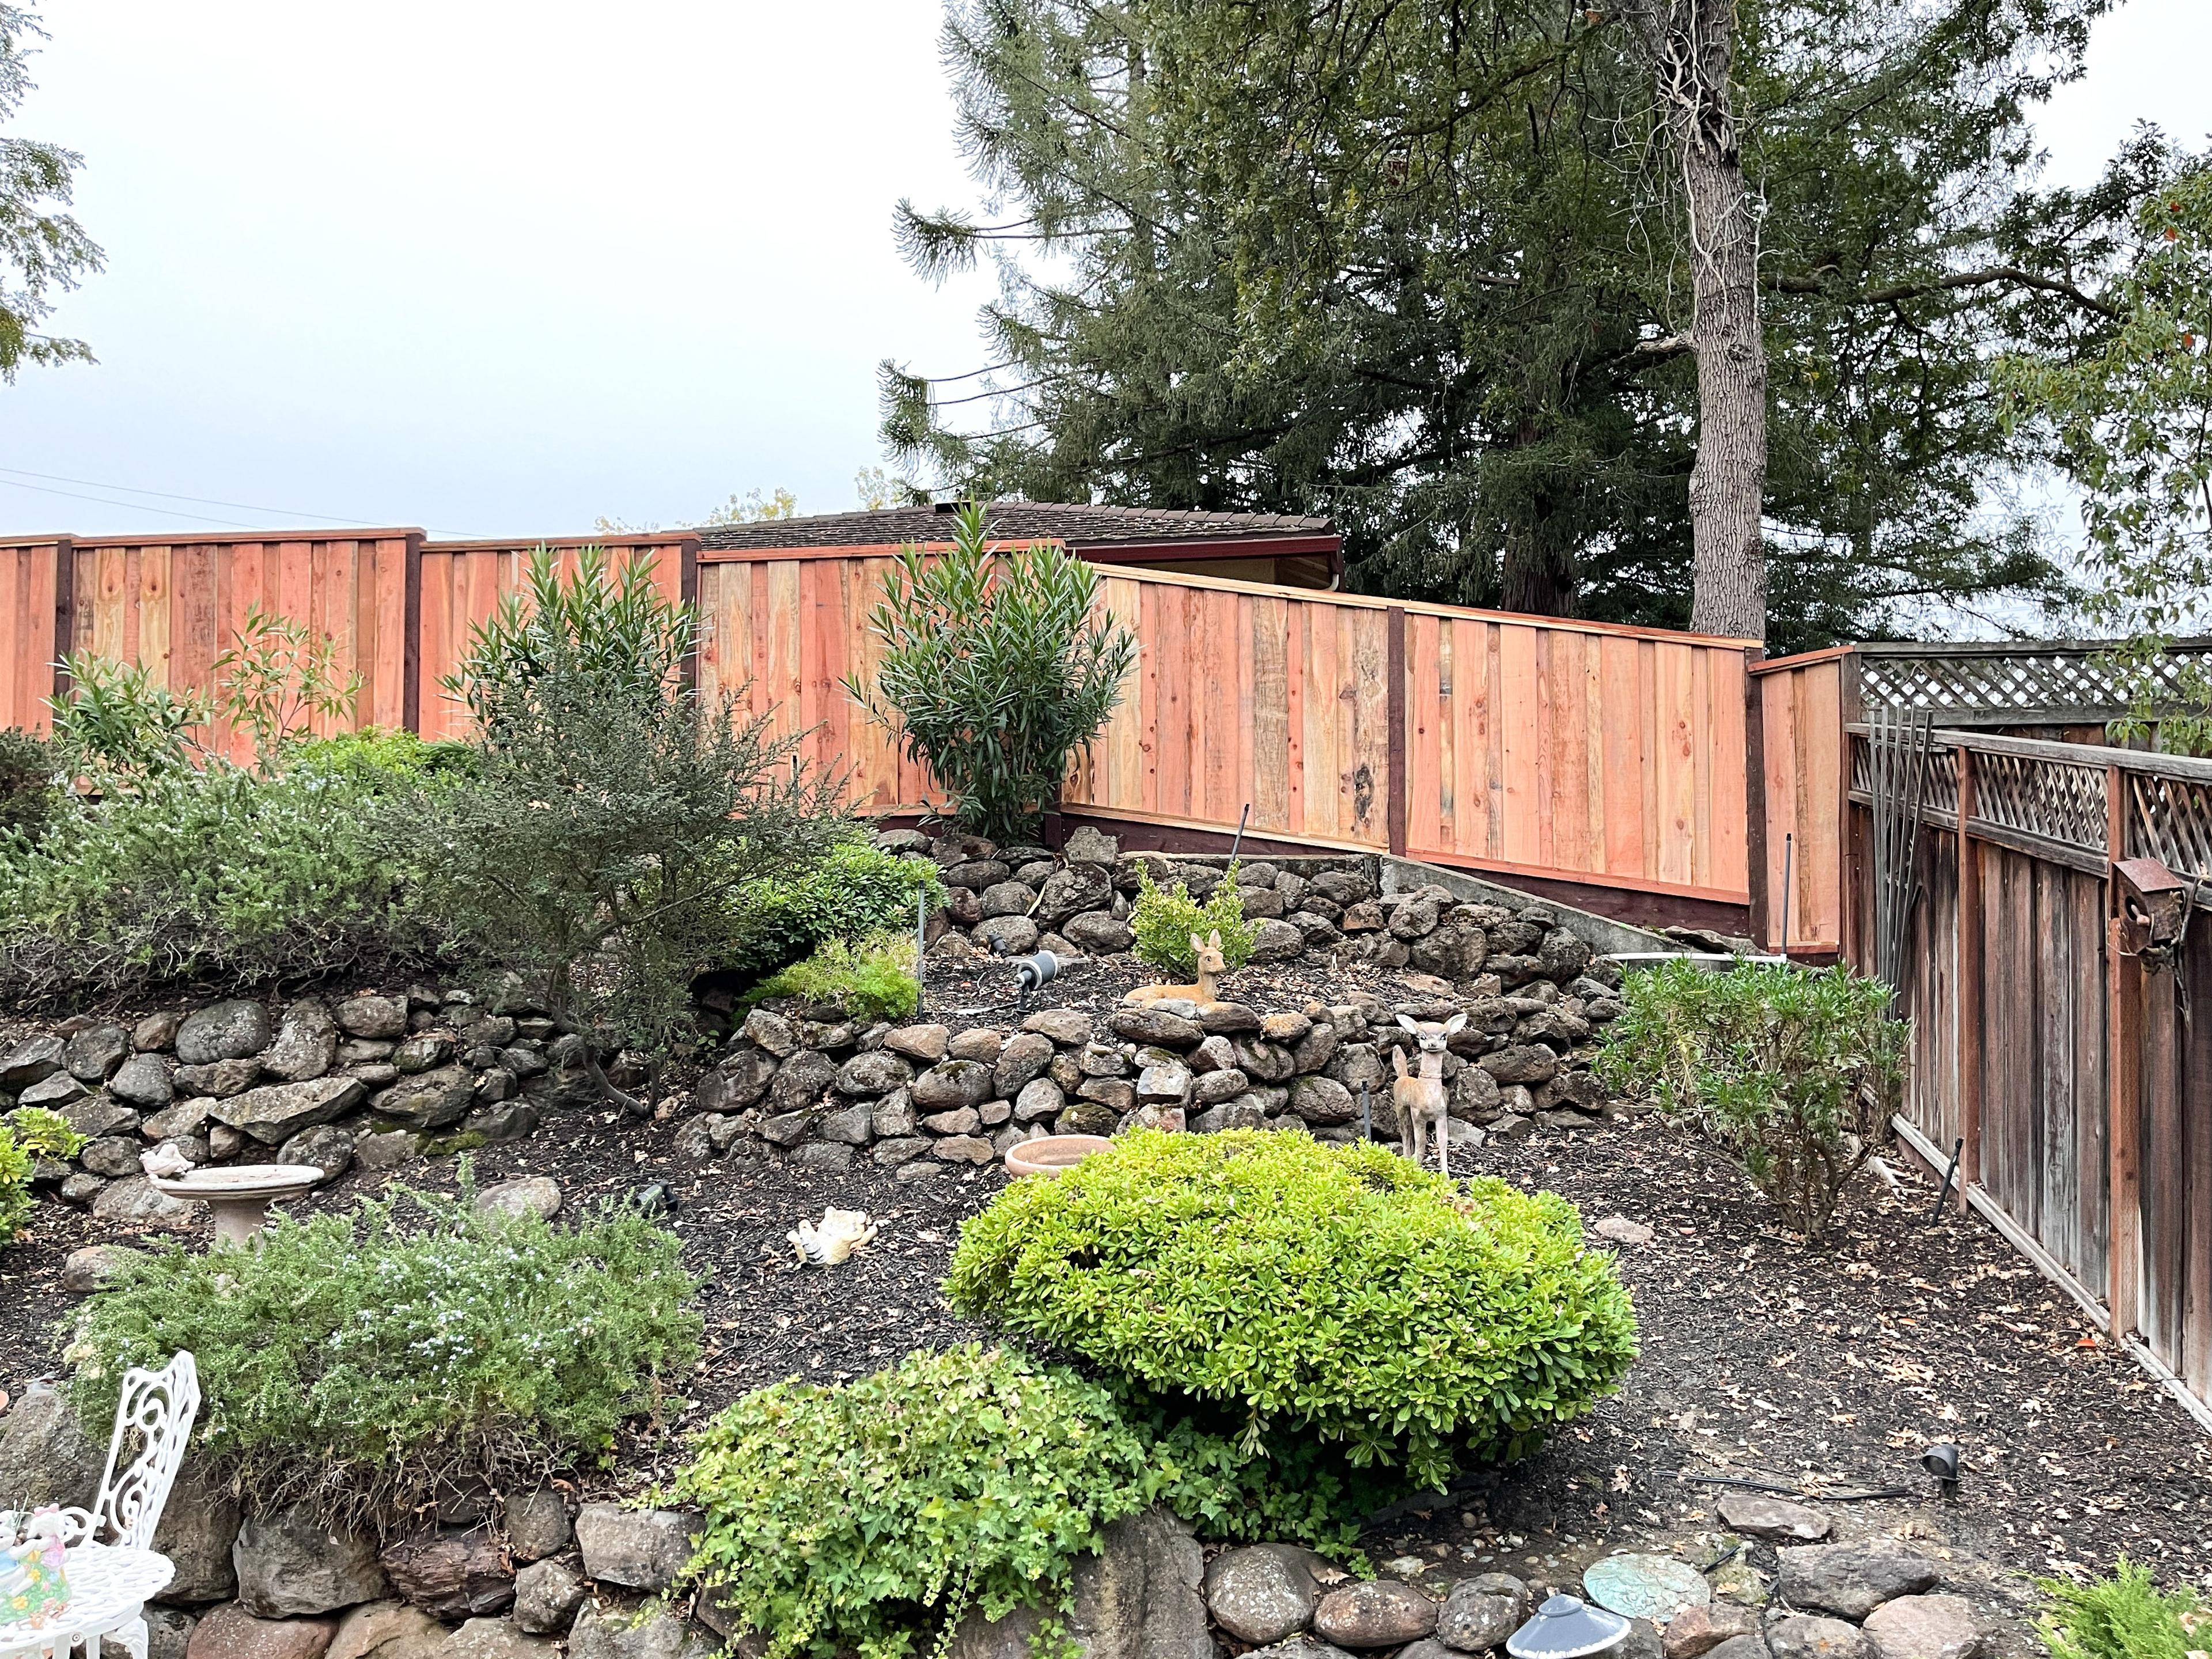 Picture of California Fences, Inc. - California Fences, Inc.